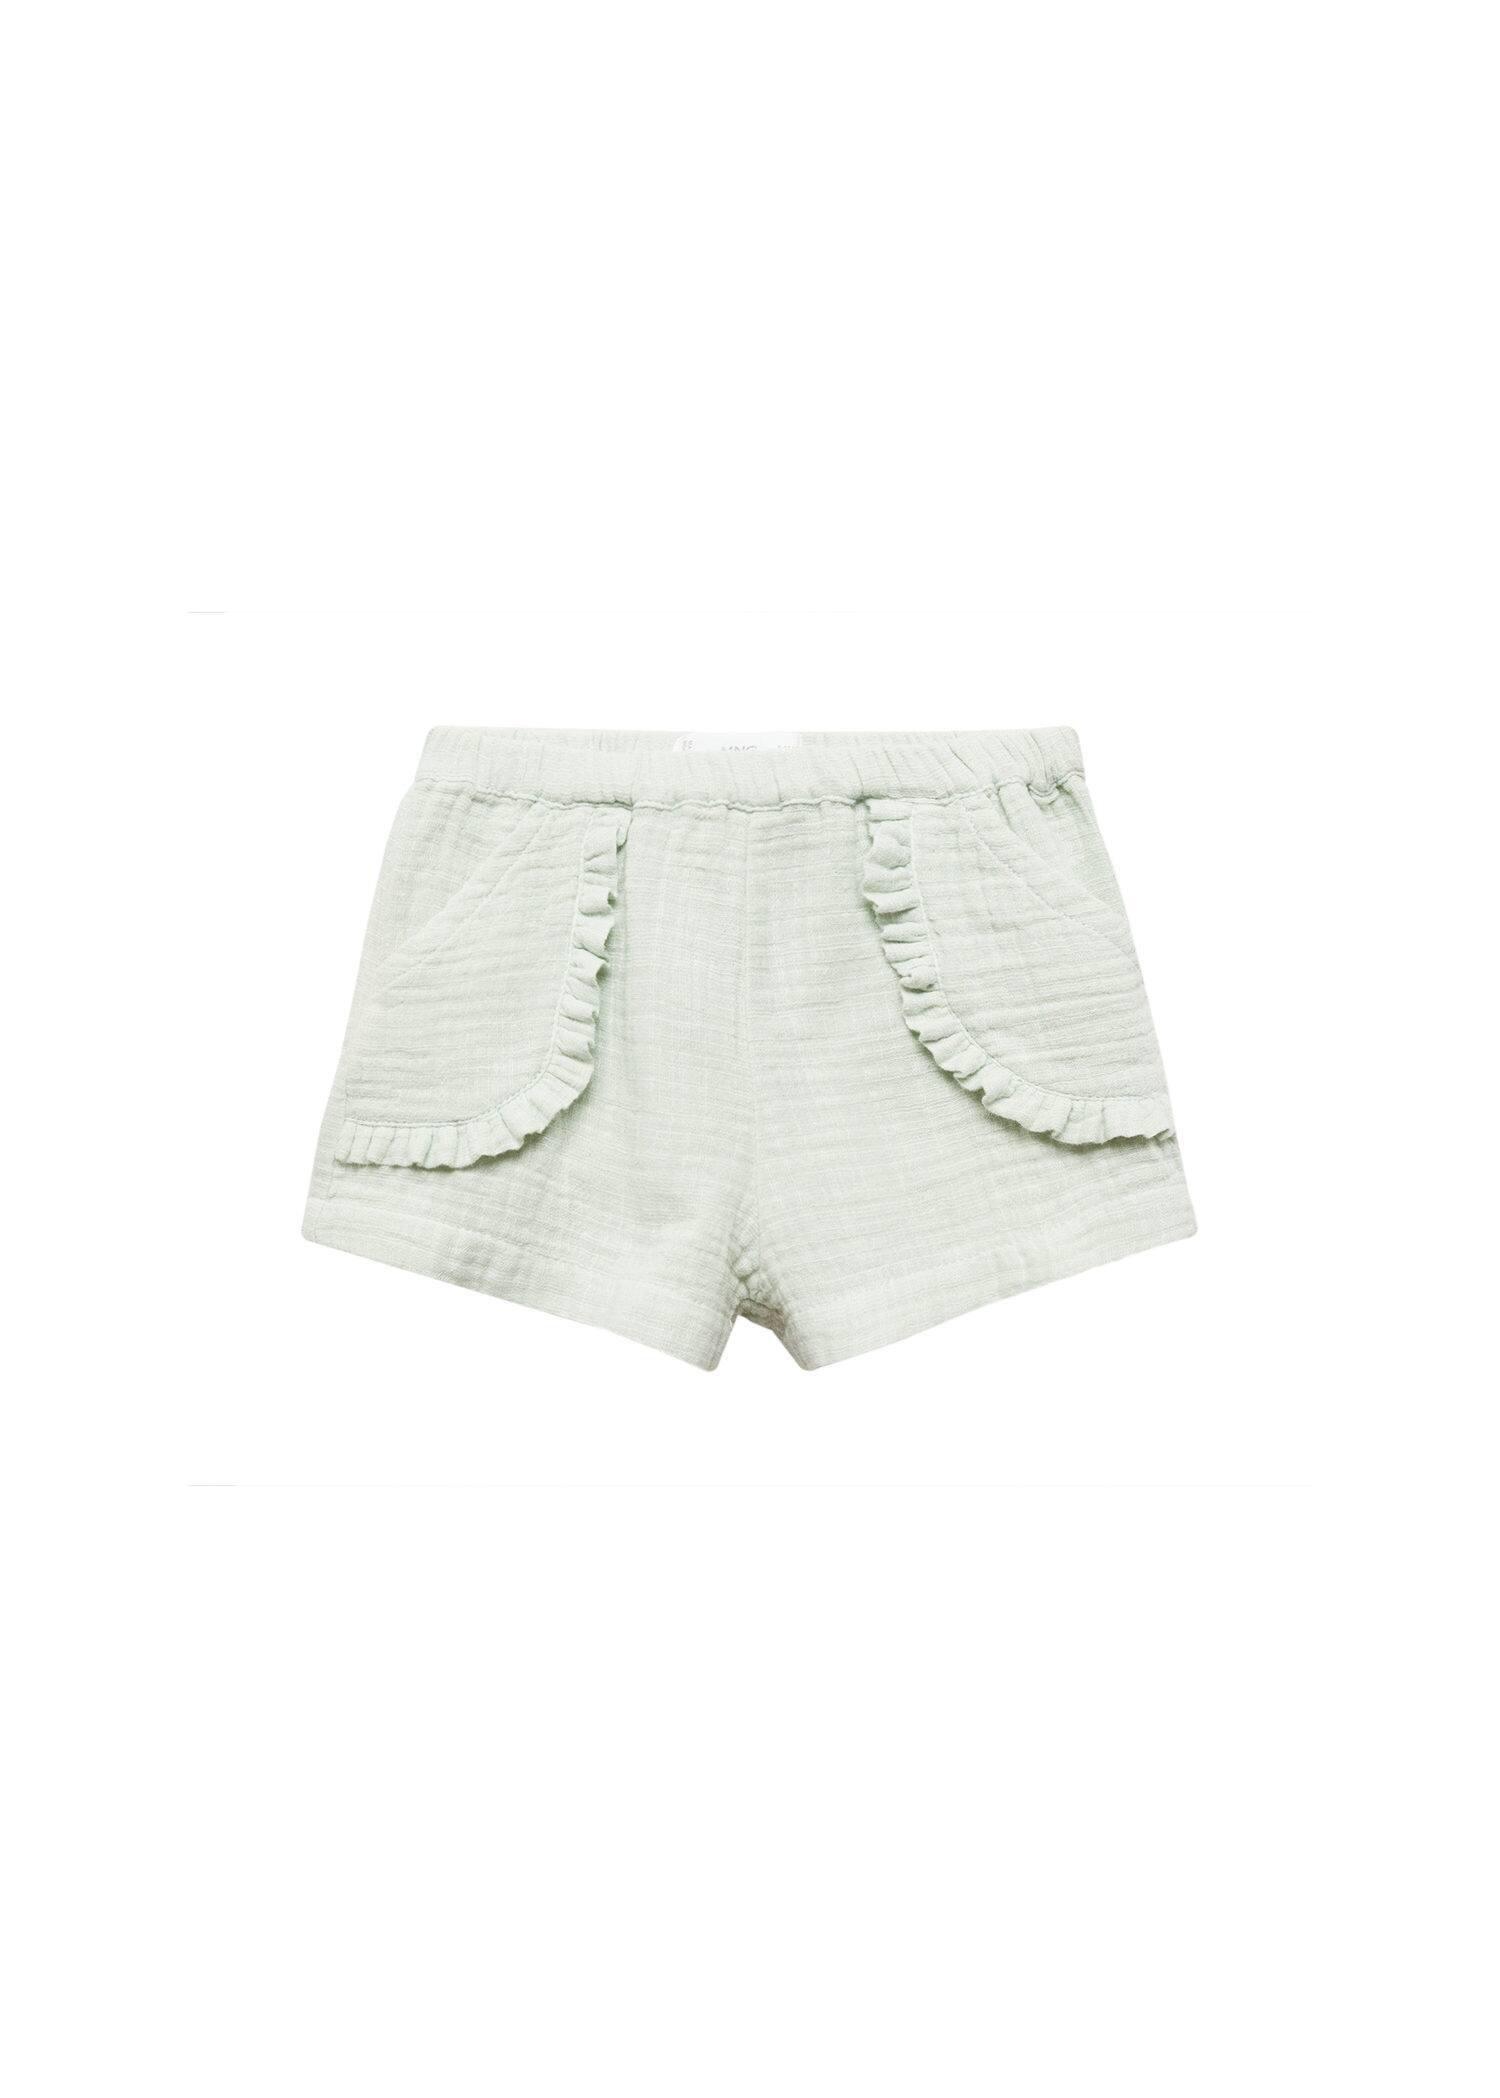 Mango - Green Cotton Waist Shorts, Kids Girls